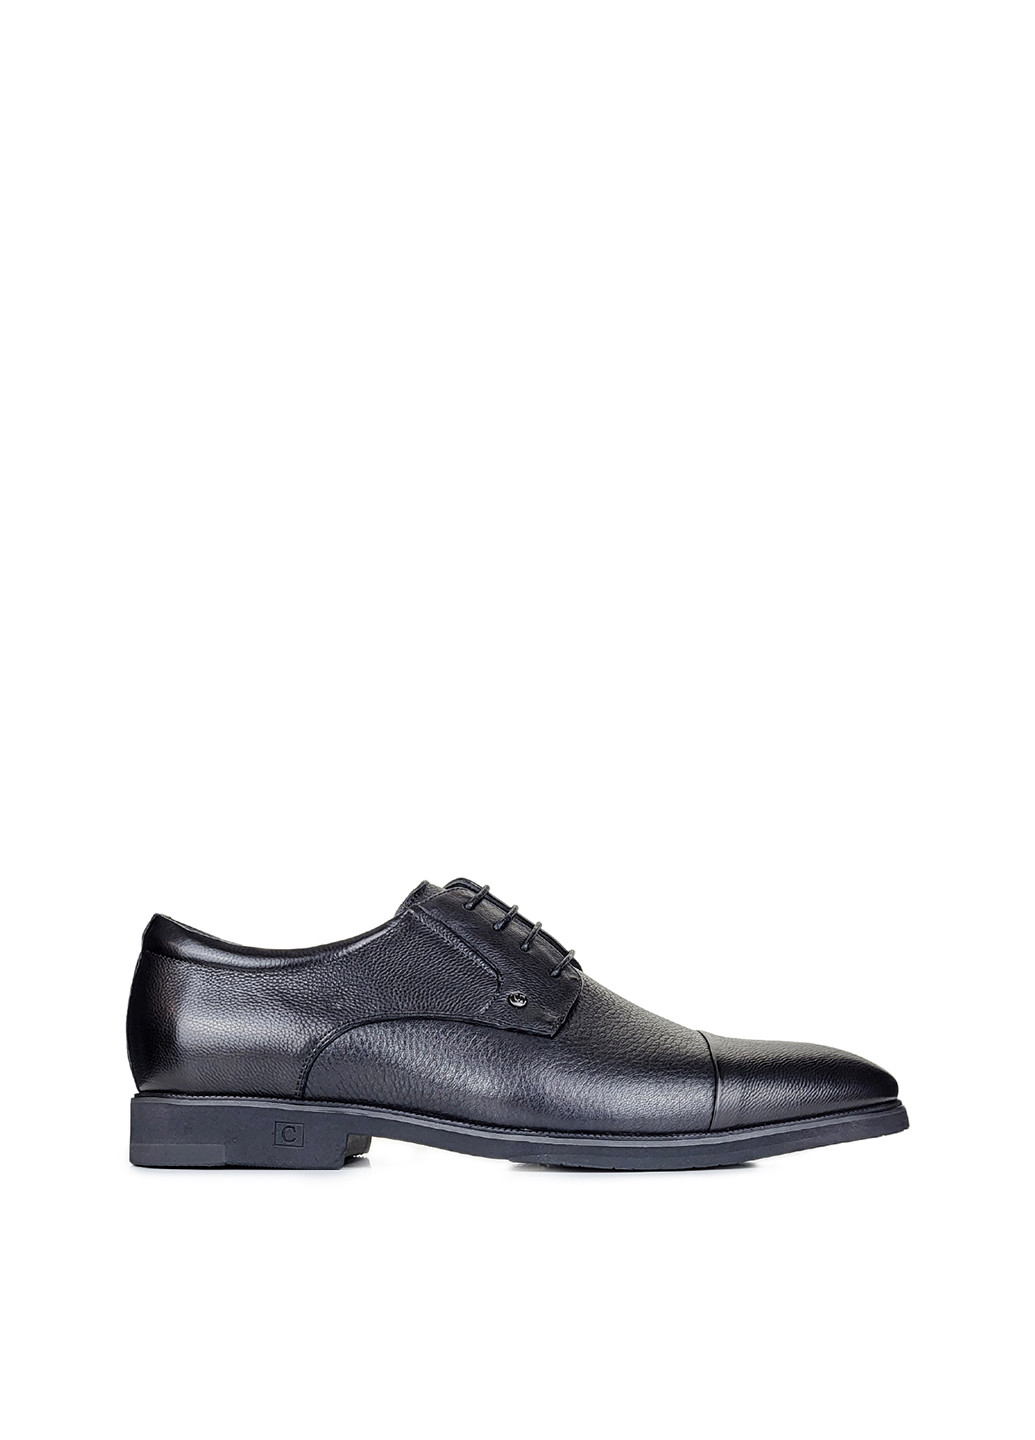 Черные повседневные классические туфли мужские на шнурках демисезон,,s067y-4-f07 черный,39 Cosottinni на шнурках